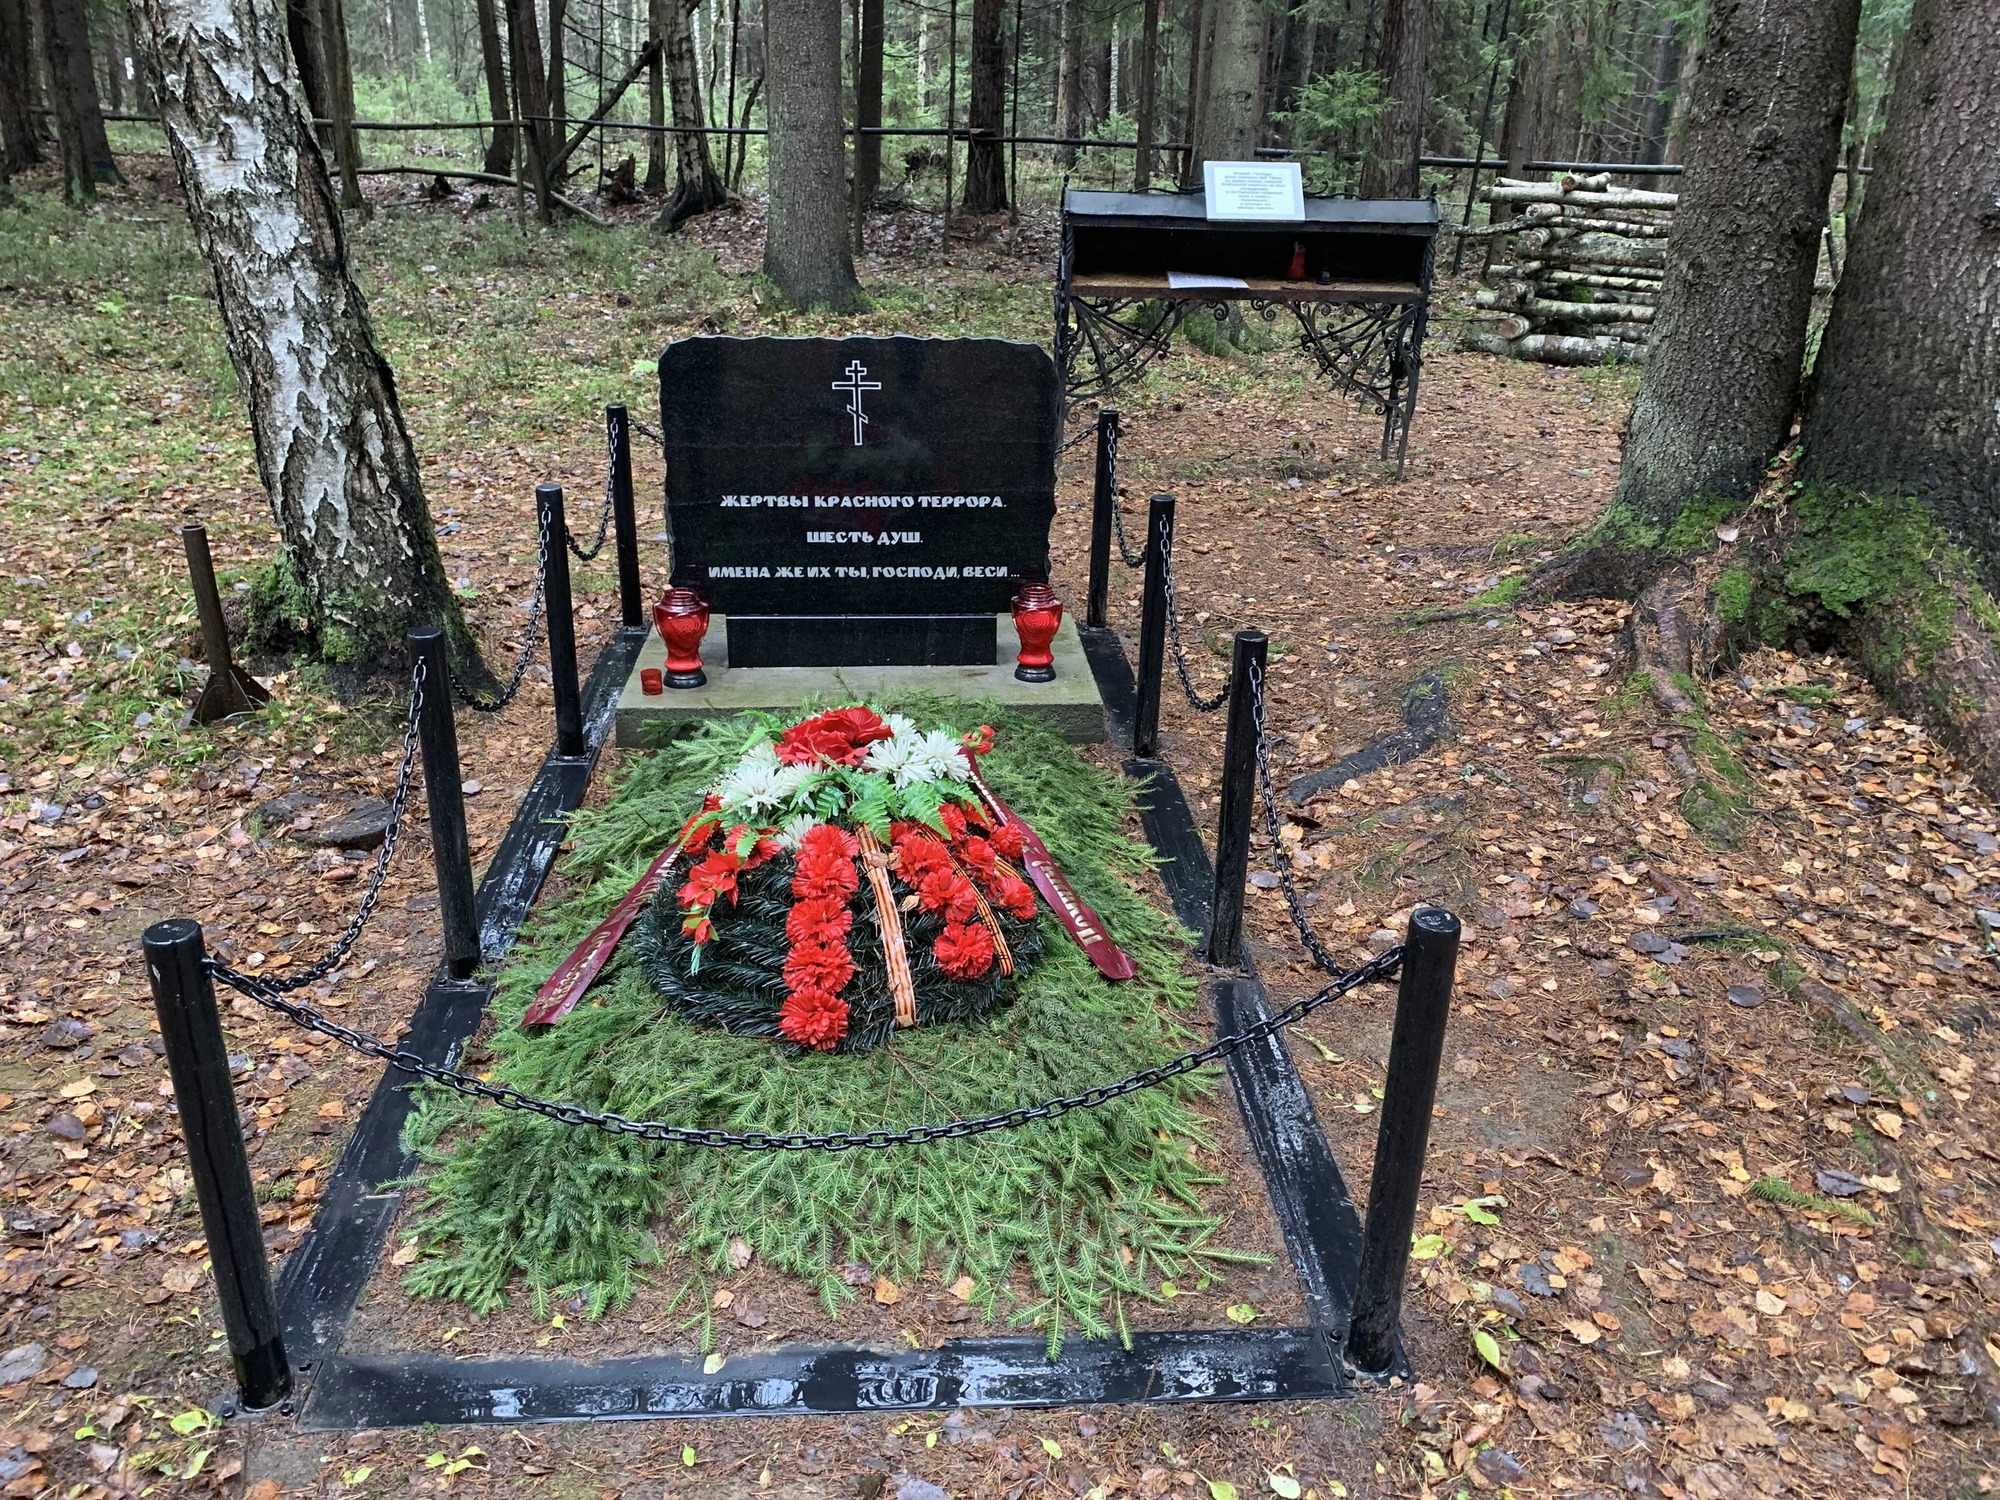 Сотрудники аппарата навели порядок на территории памятного места в Ковалевском лесу